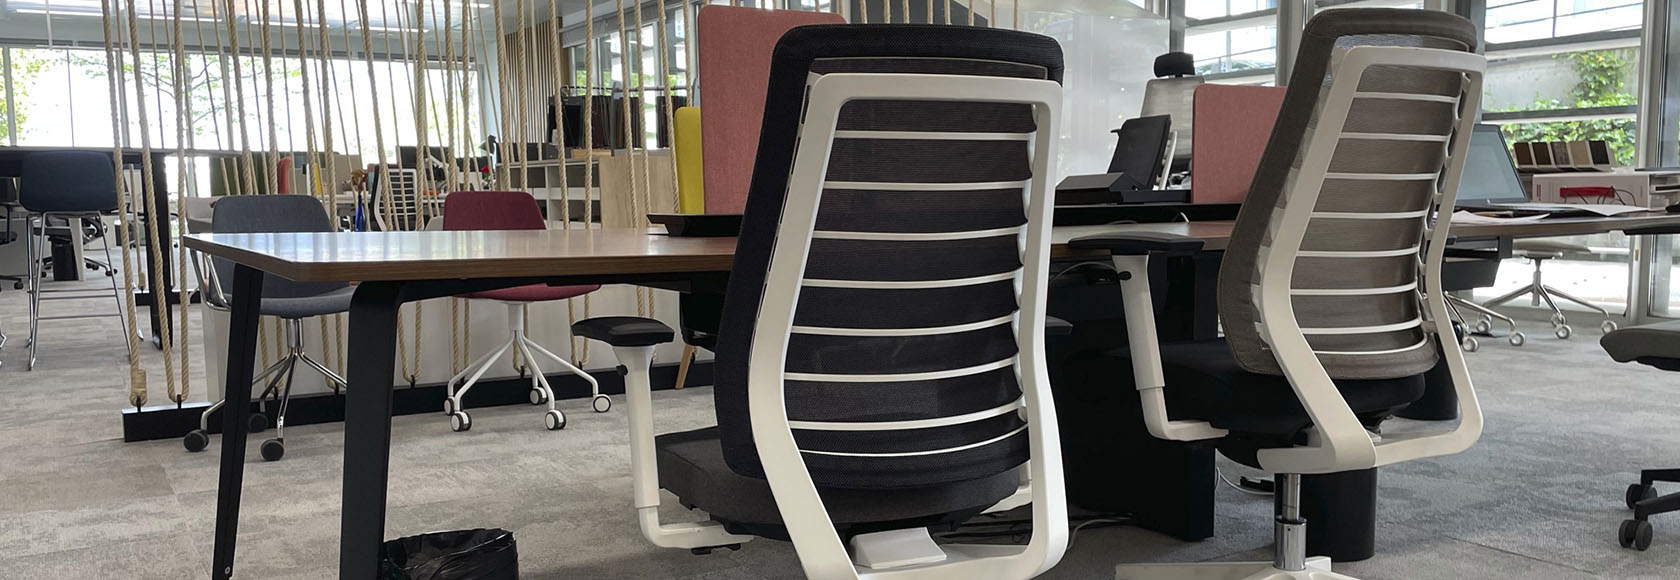 tipos de sillas de oficina